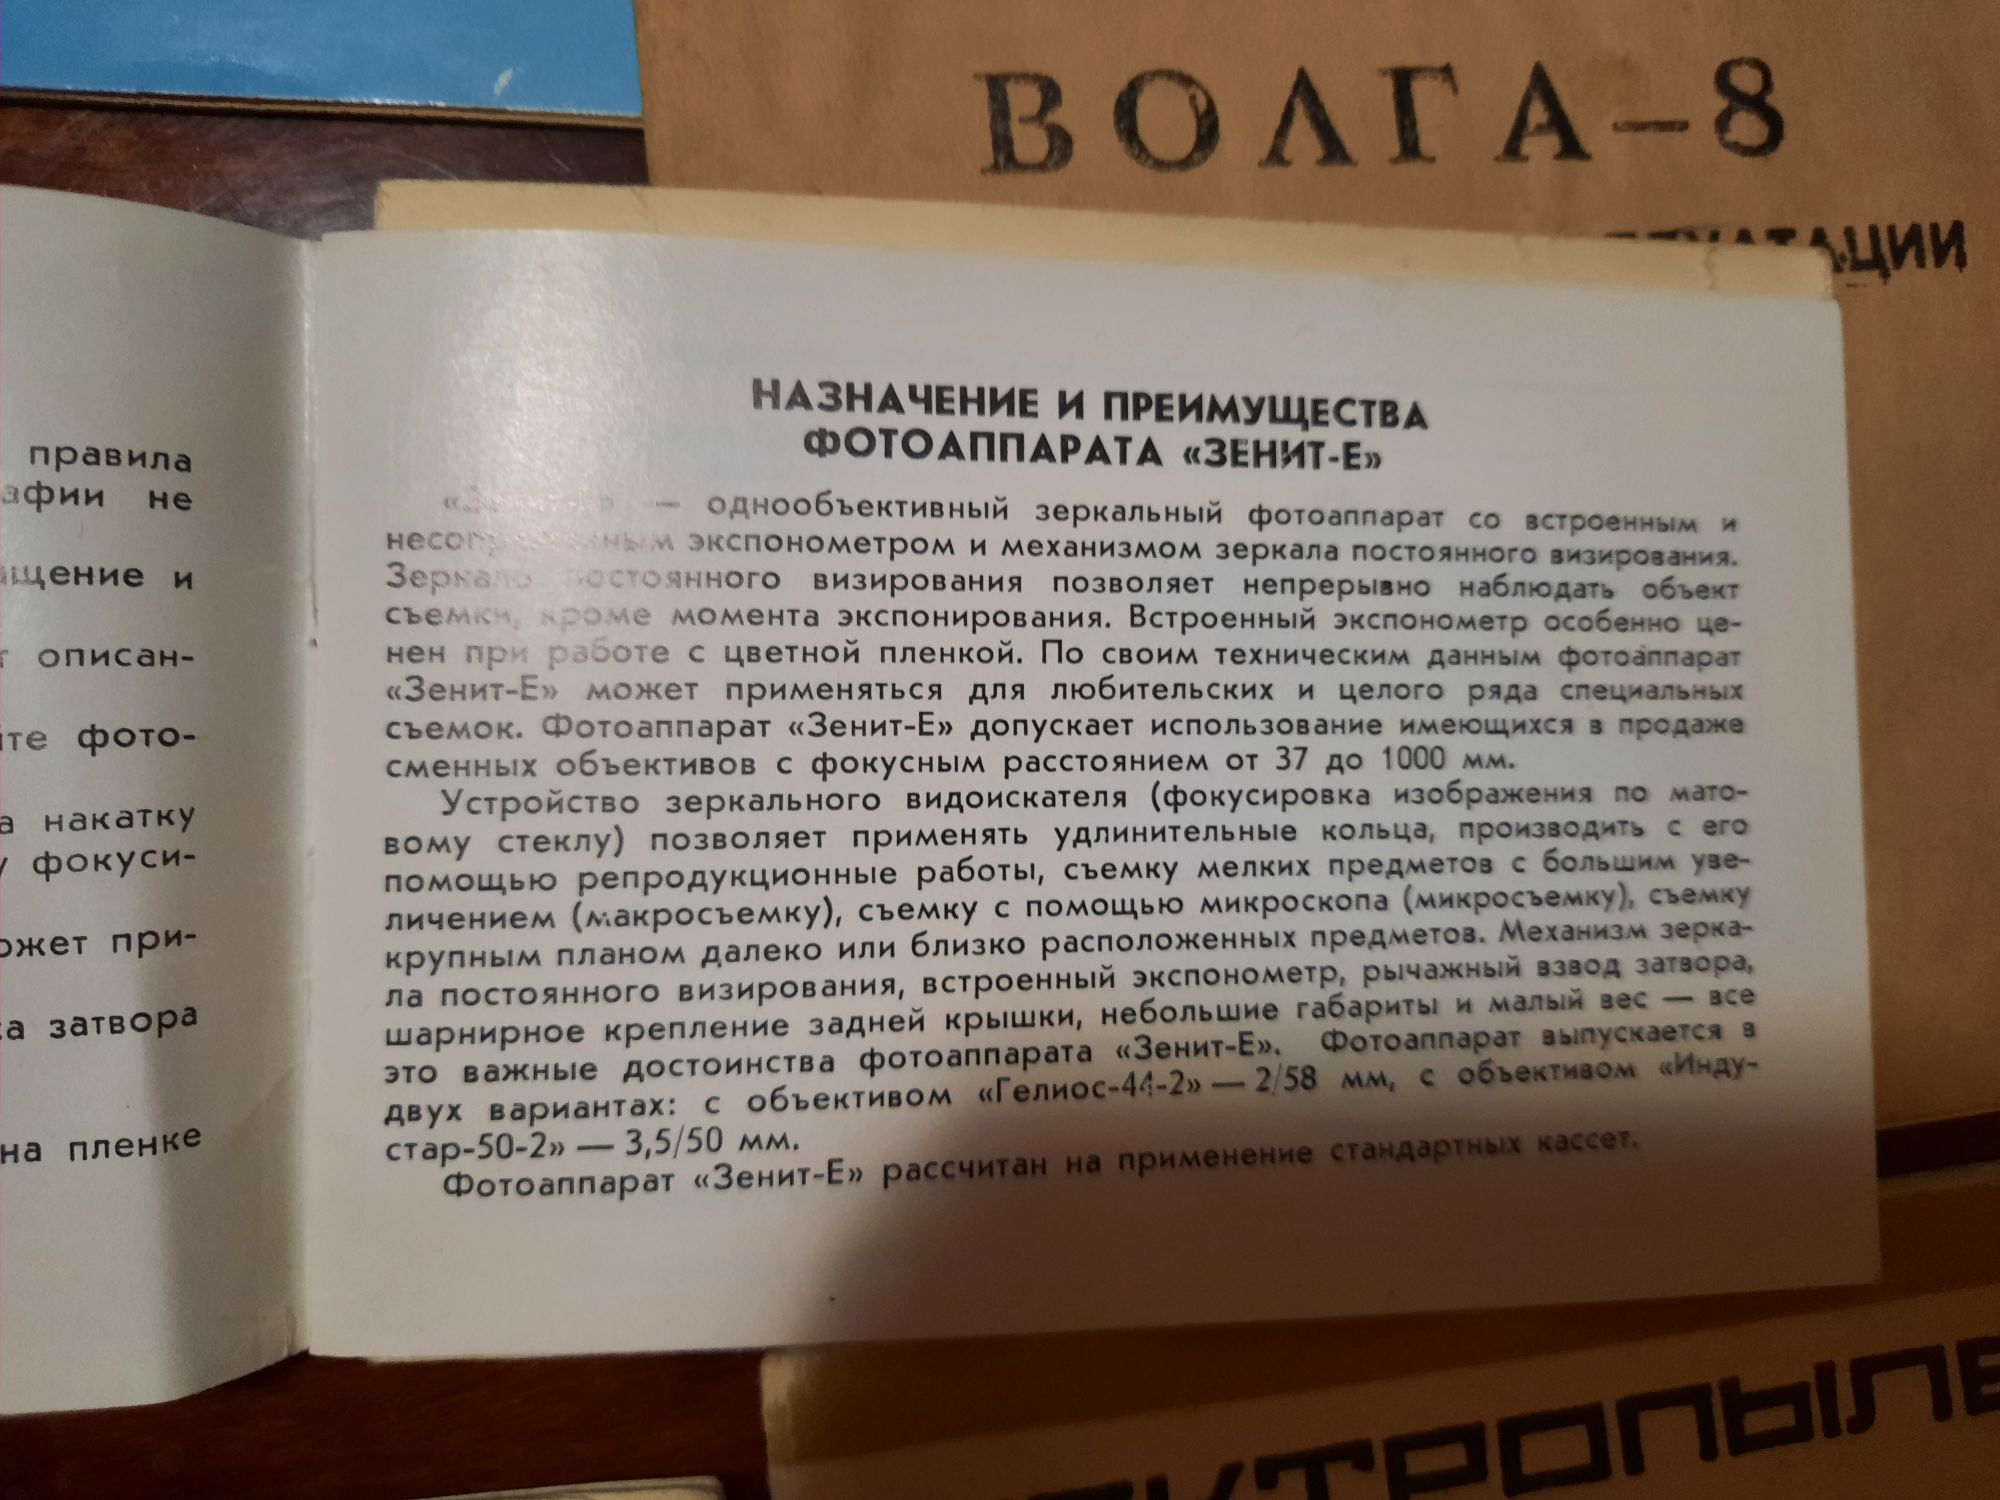 Руководство по эксплуатации (технический паспорт) техники СССР (ретро